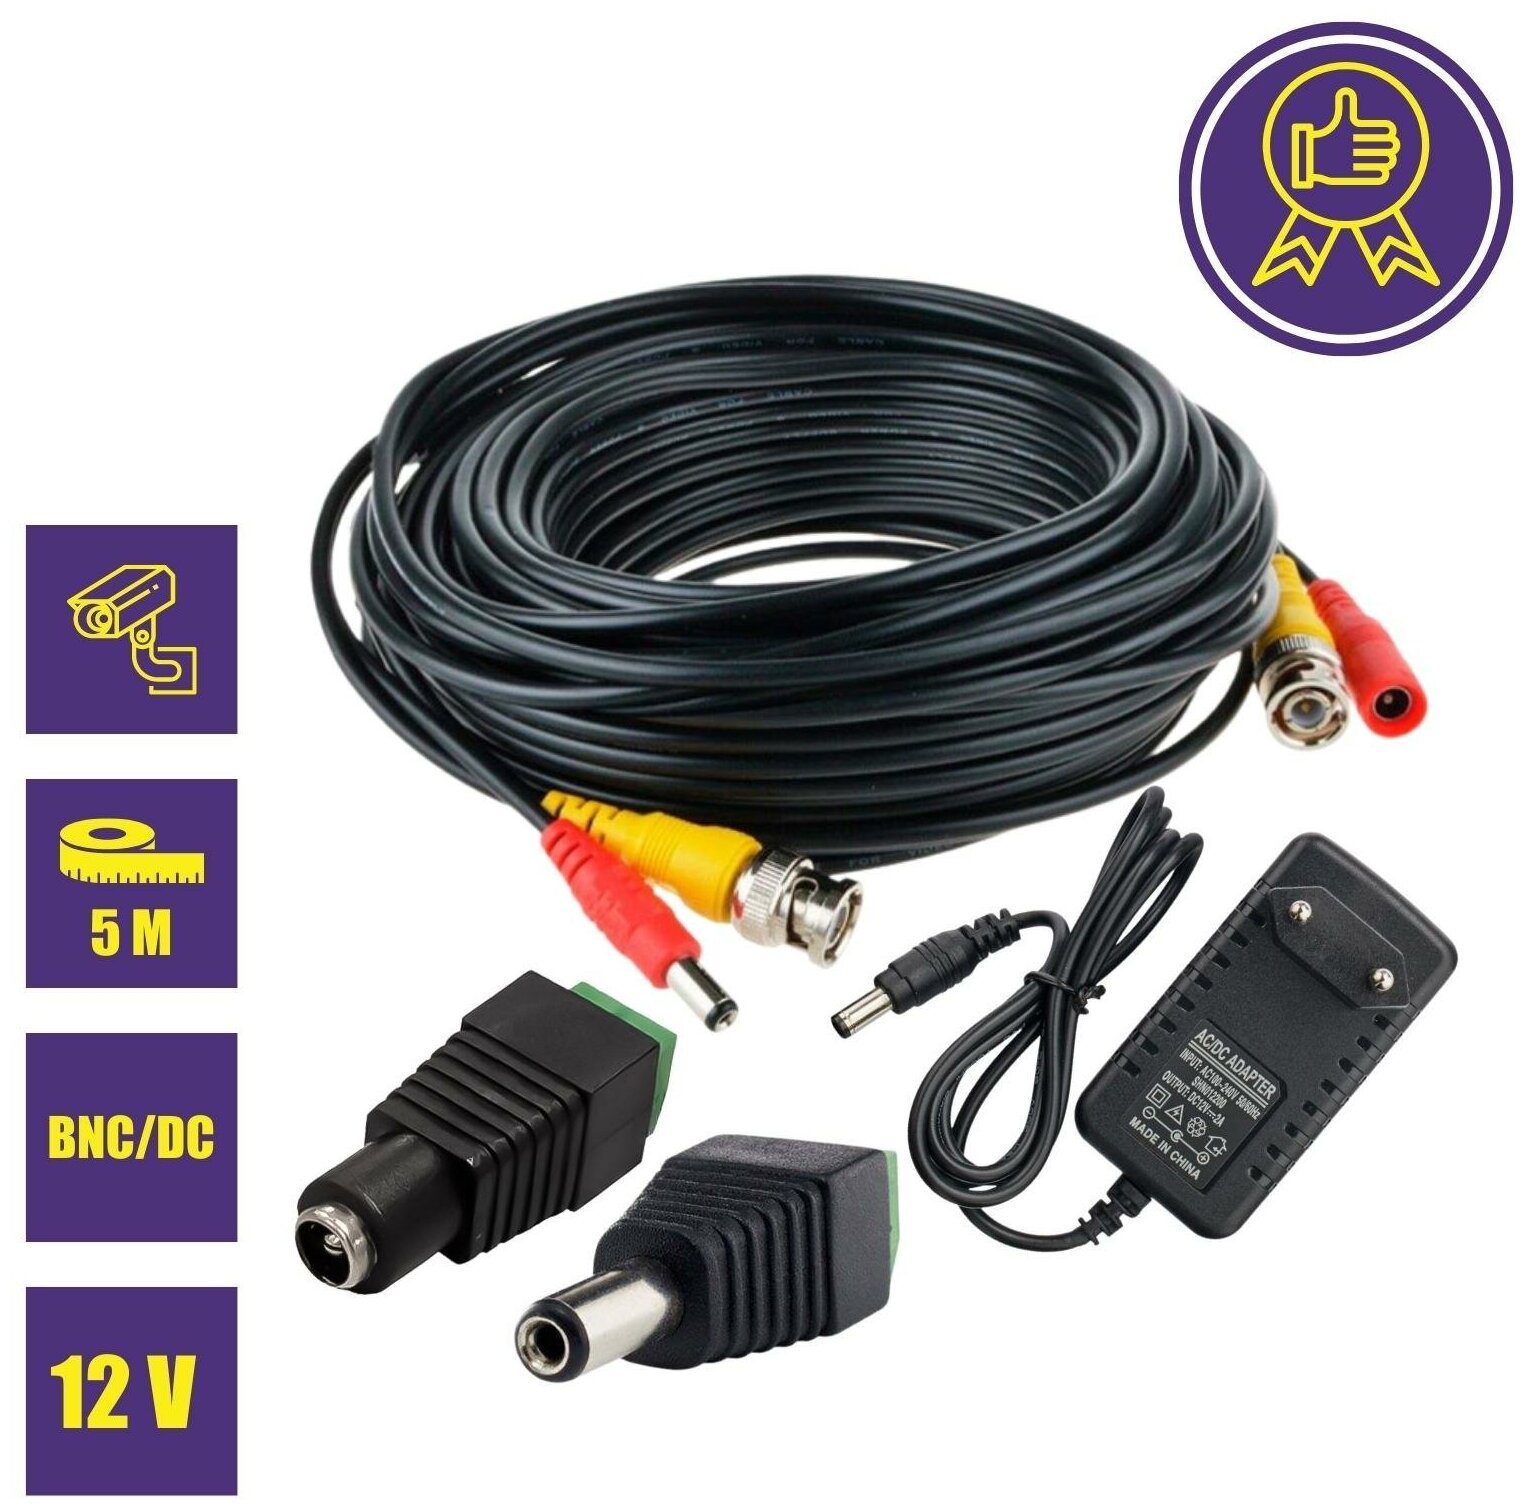 Комплект К-5 для системы видеонаблюдения: кабель BNC/DC 5 м переходники DC(мама) DC(папа) и блок питания